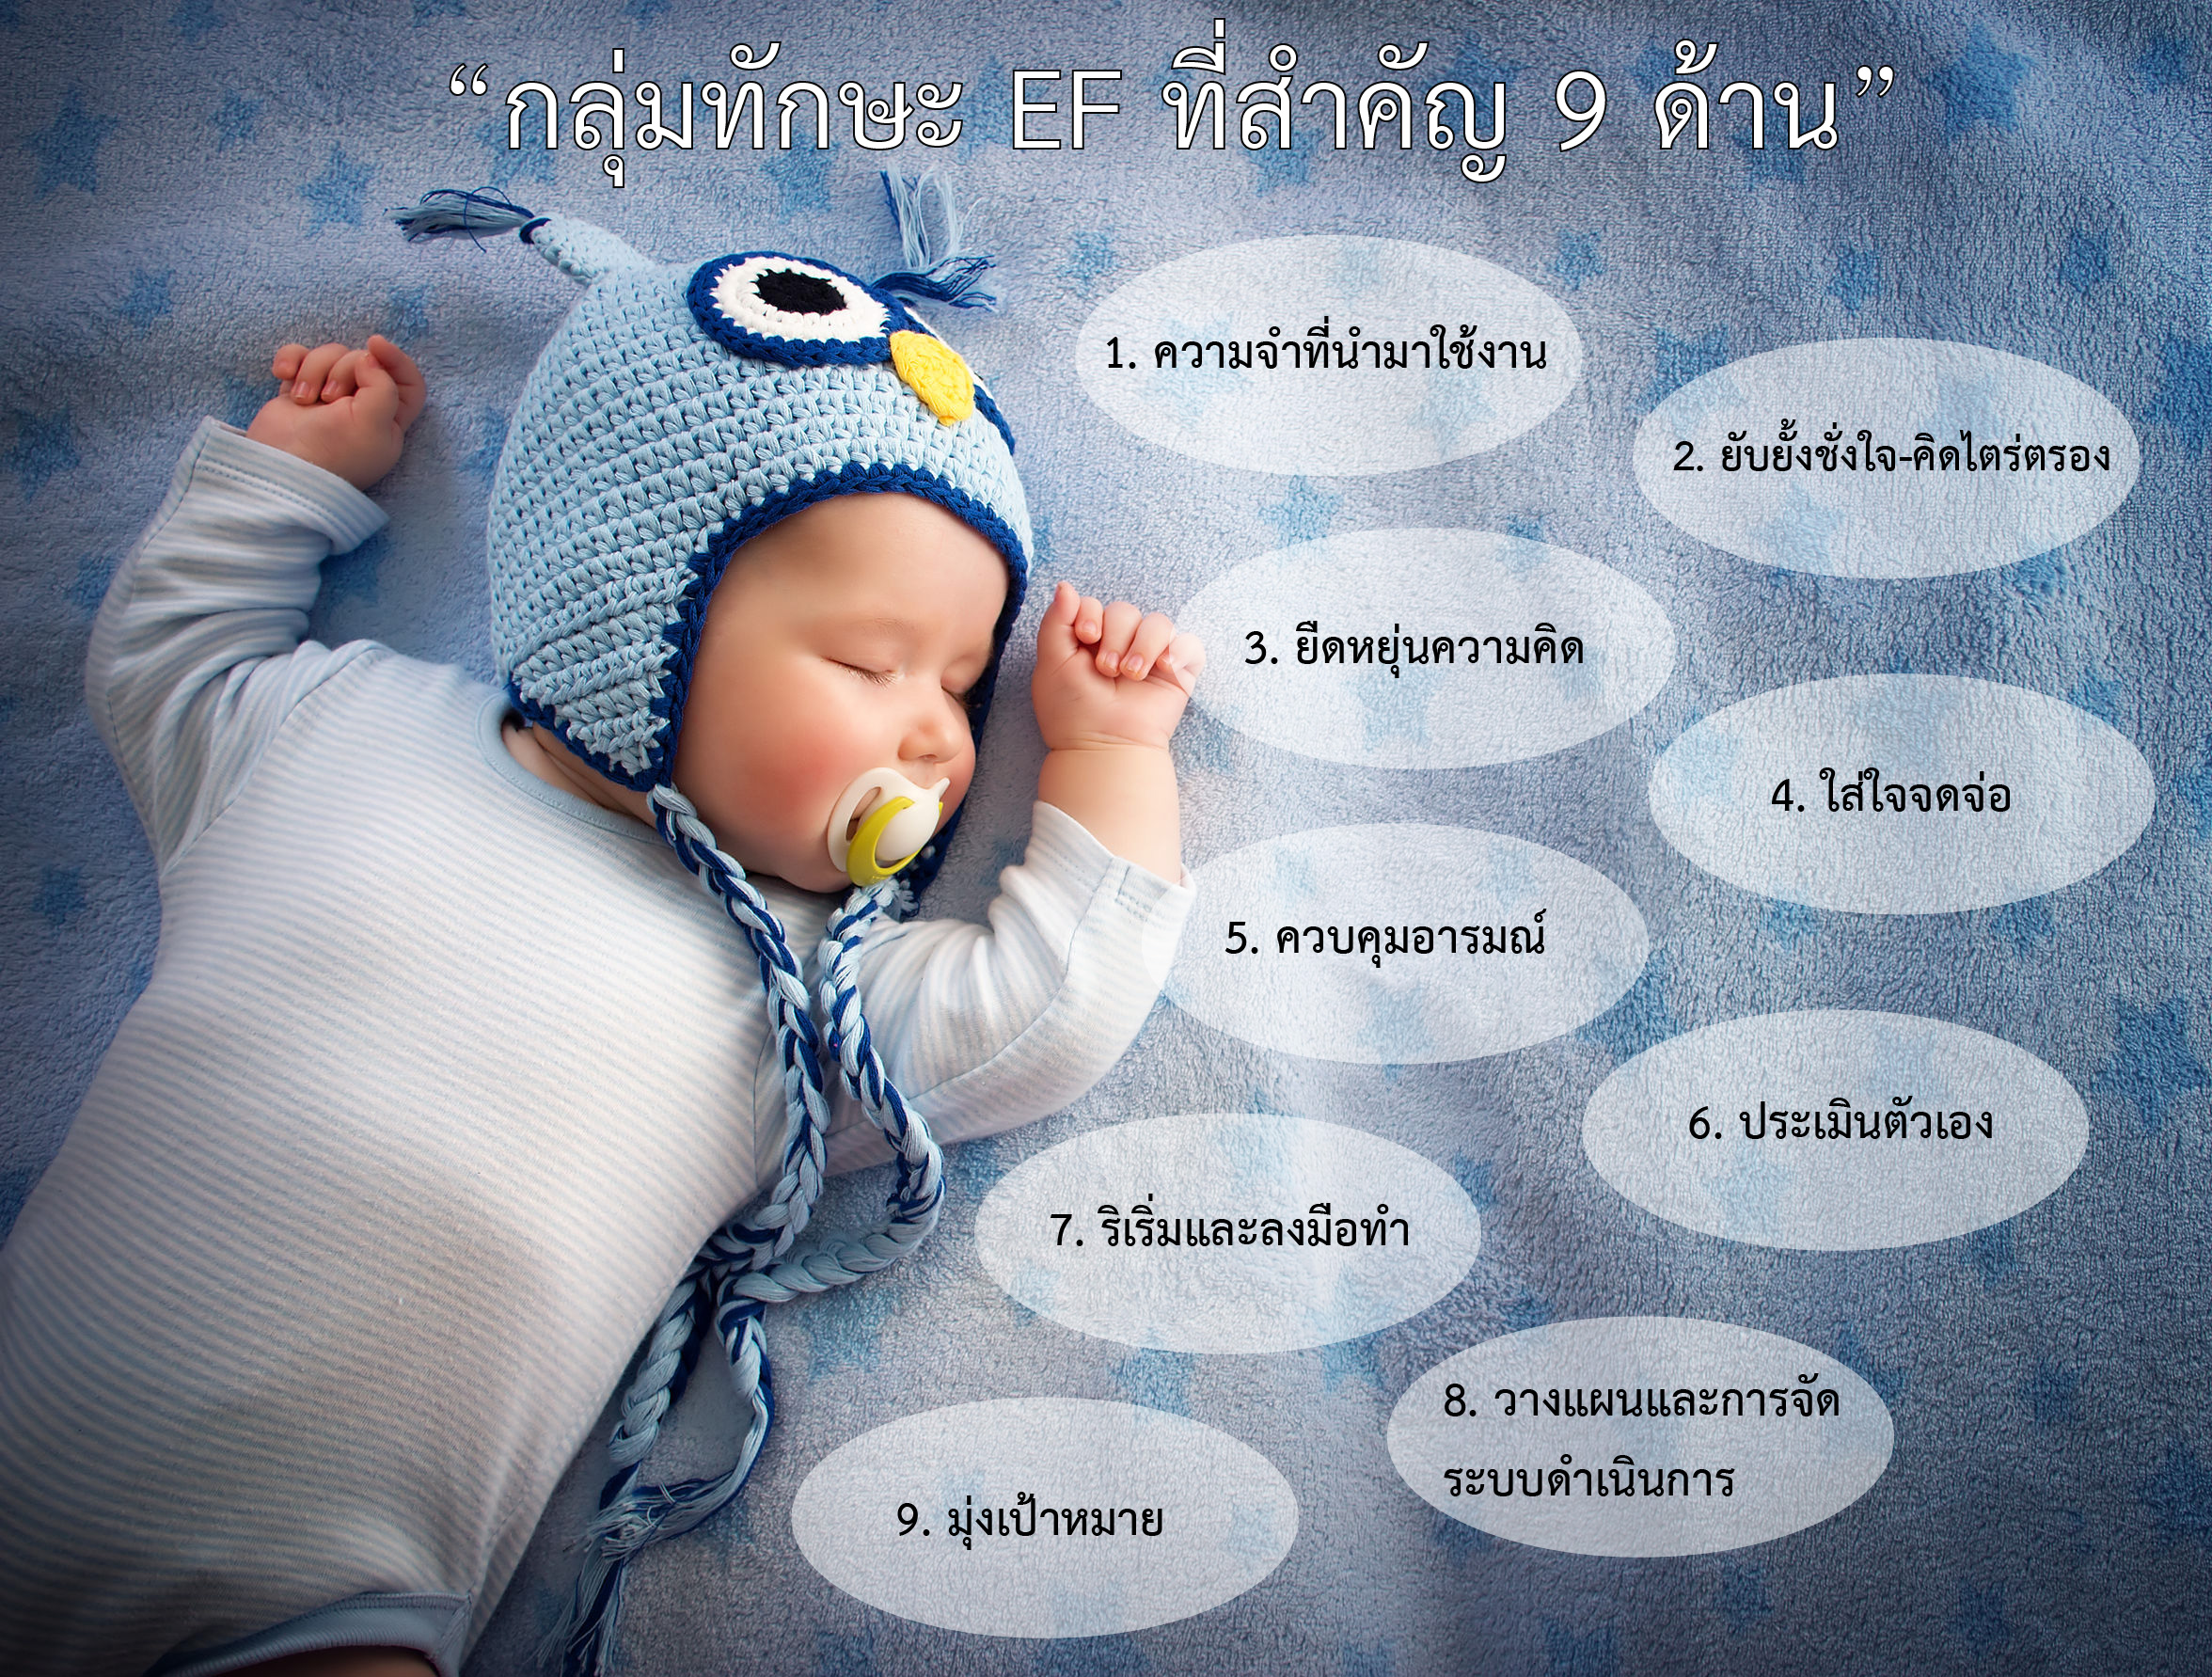 ‘นมแม่’ พัฒนาสมองลูกอย่างไร?   thaihealth